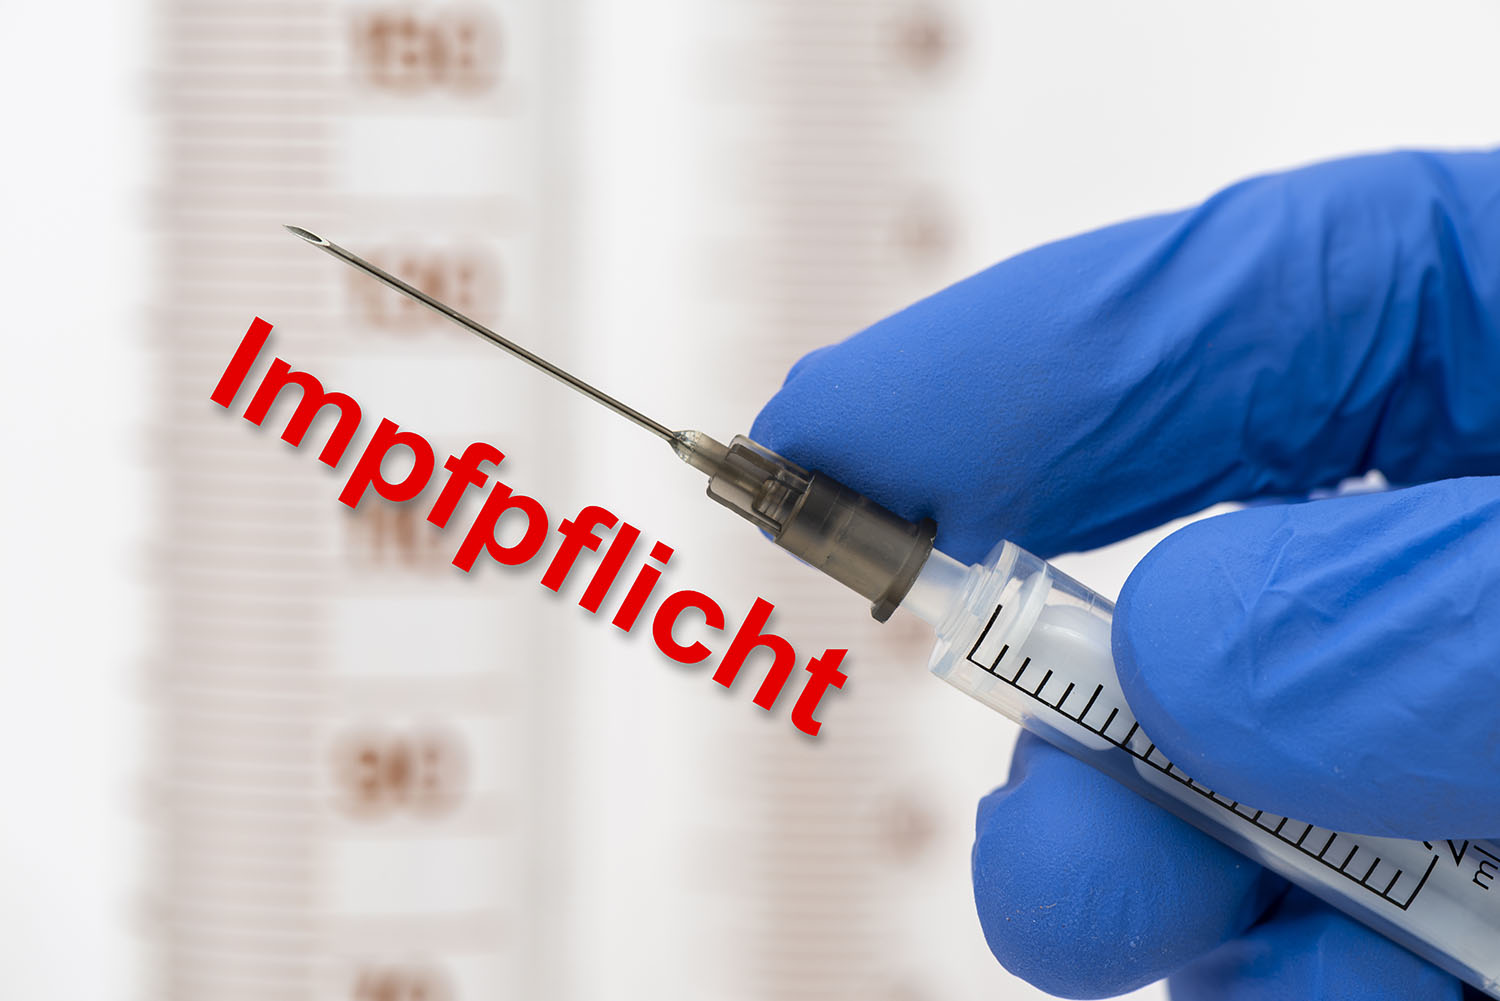 Wieder ist eine Diskussion um die einrichtungsbezogene Impfpflicht entbrannt: Die Deutsche Krankenhausgesellschaft sowie einige Politiker plädieren dafür, diese Ende 2022 auslaufen zu lassen. Vertreter der Regierungsfraktionen reagieren eher zurückhaltend.